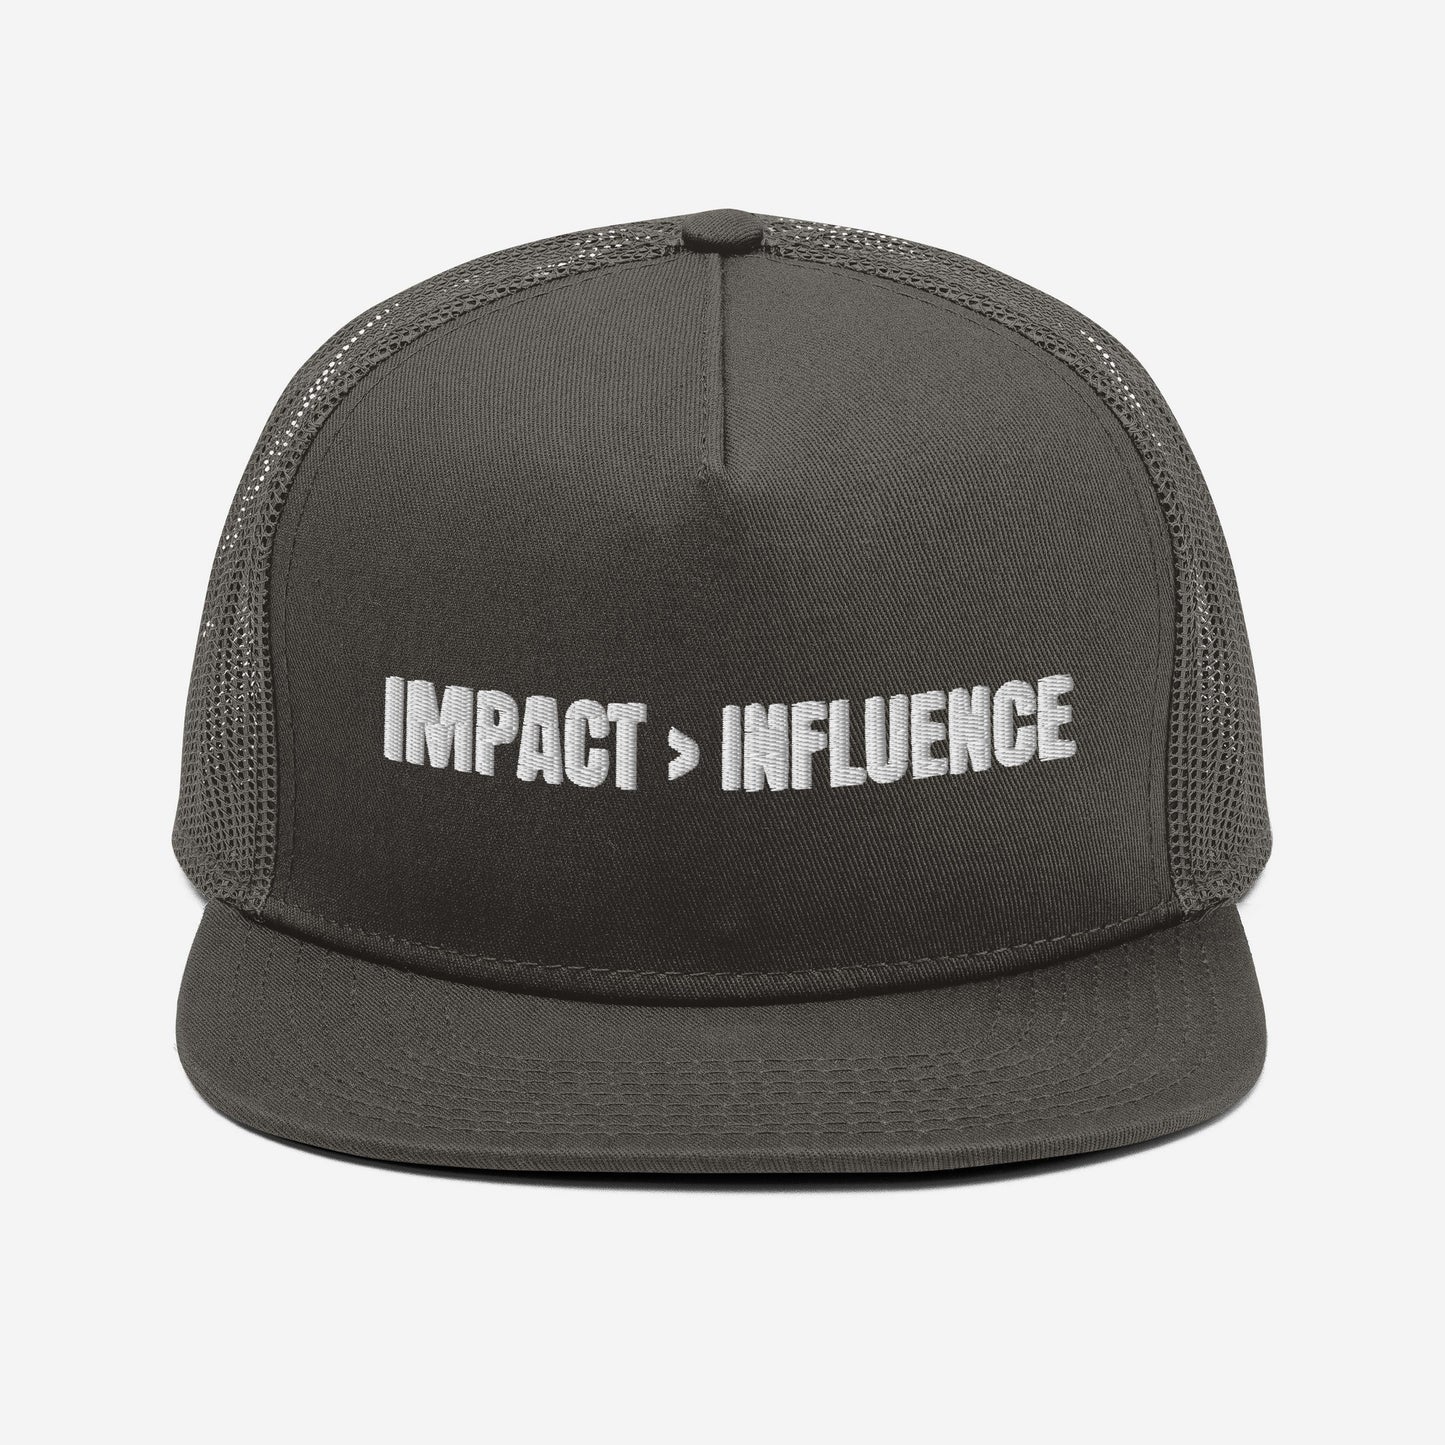 IMPACT > INFLUENCE Mesh Back Snapback